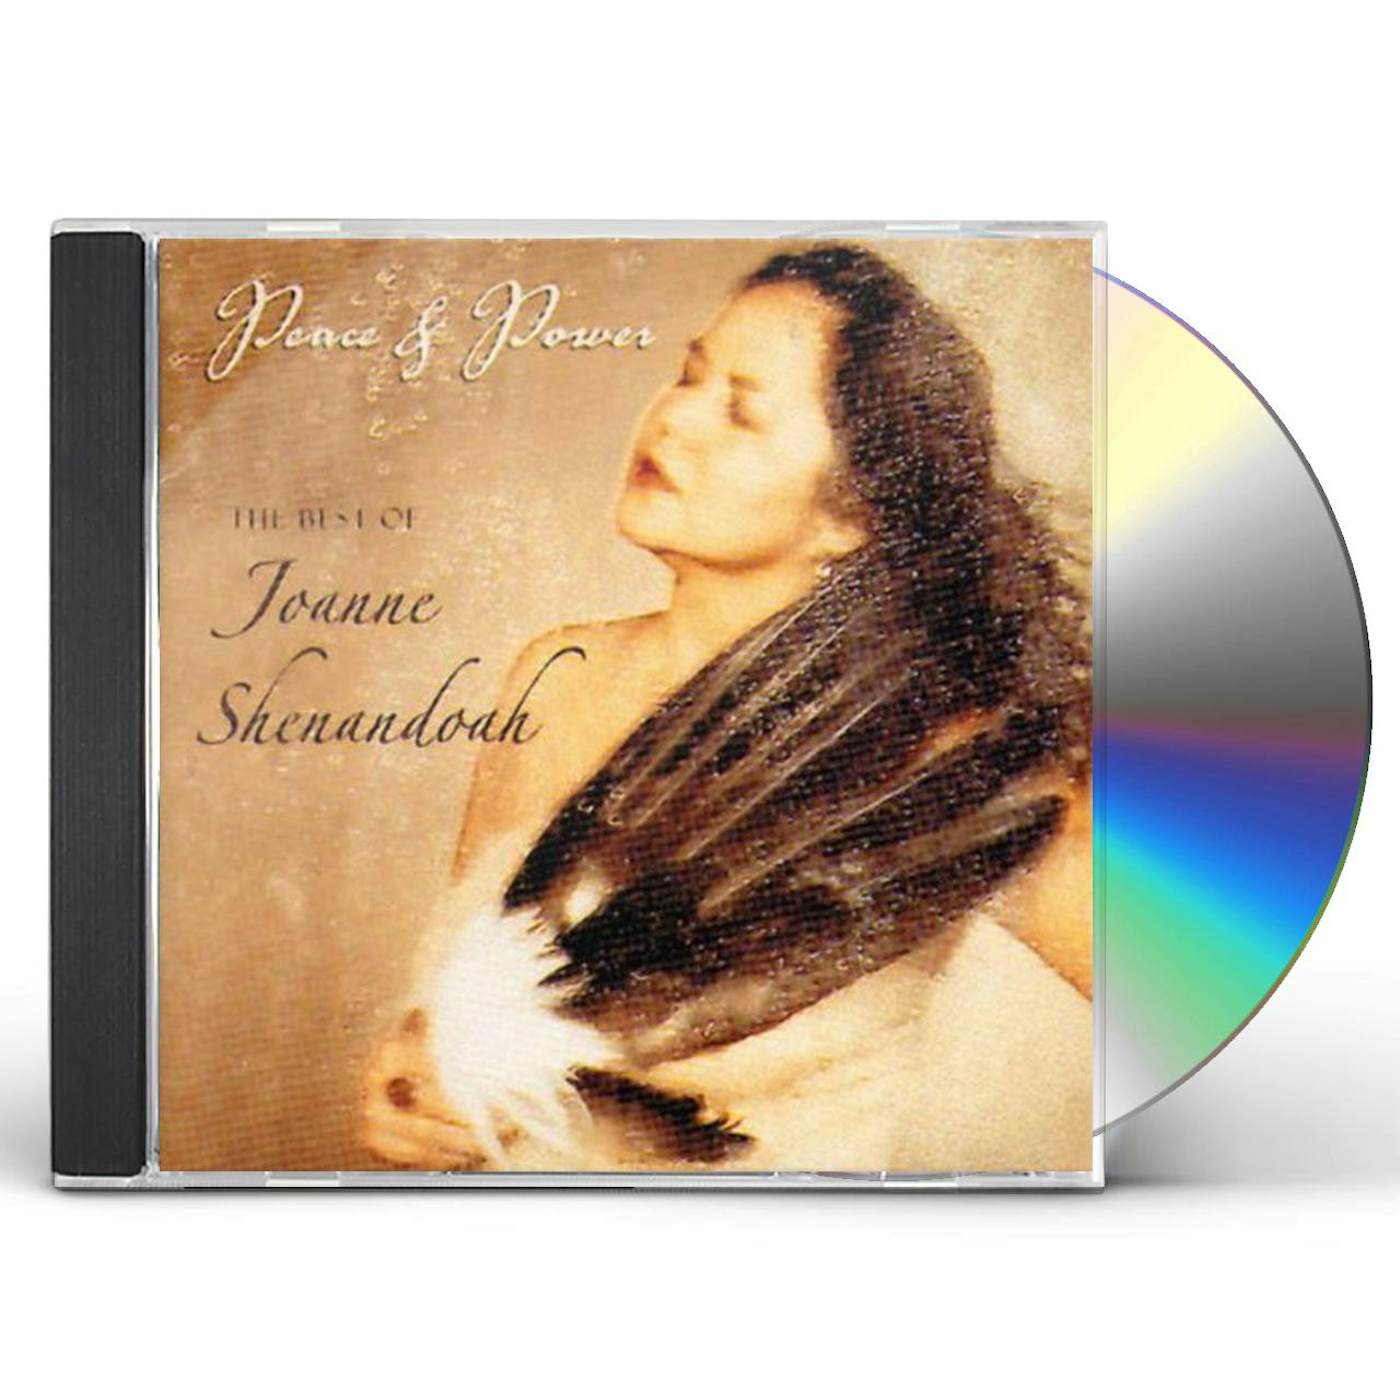 PEACE & POWER: BEST OF JOANNE SHENANDOAH CD